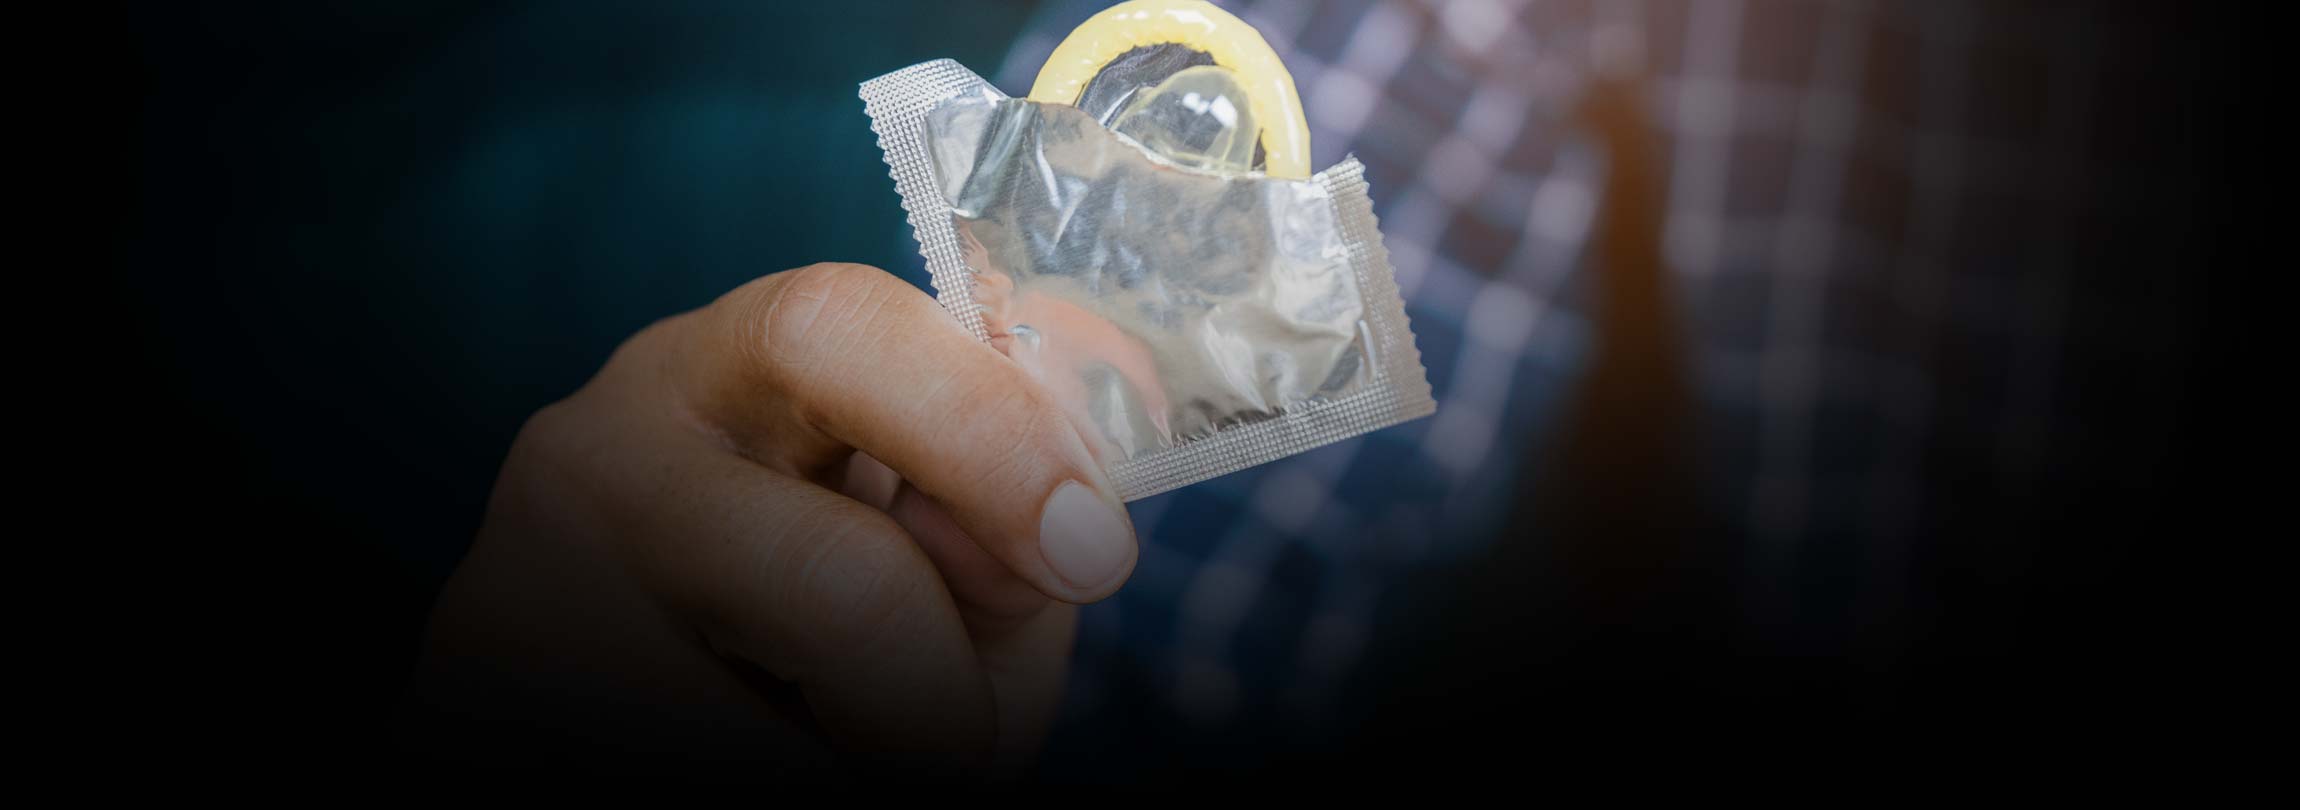 Por que a Igreja Católica é contra os métodos anticoncepcionais?